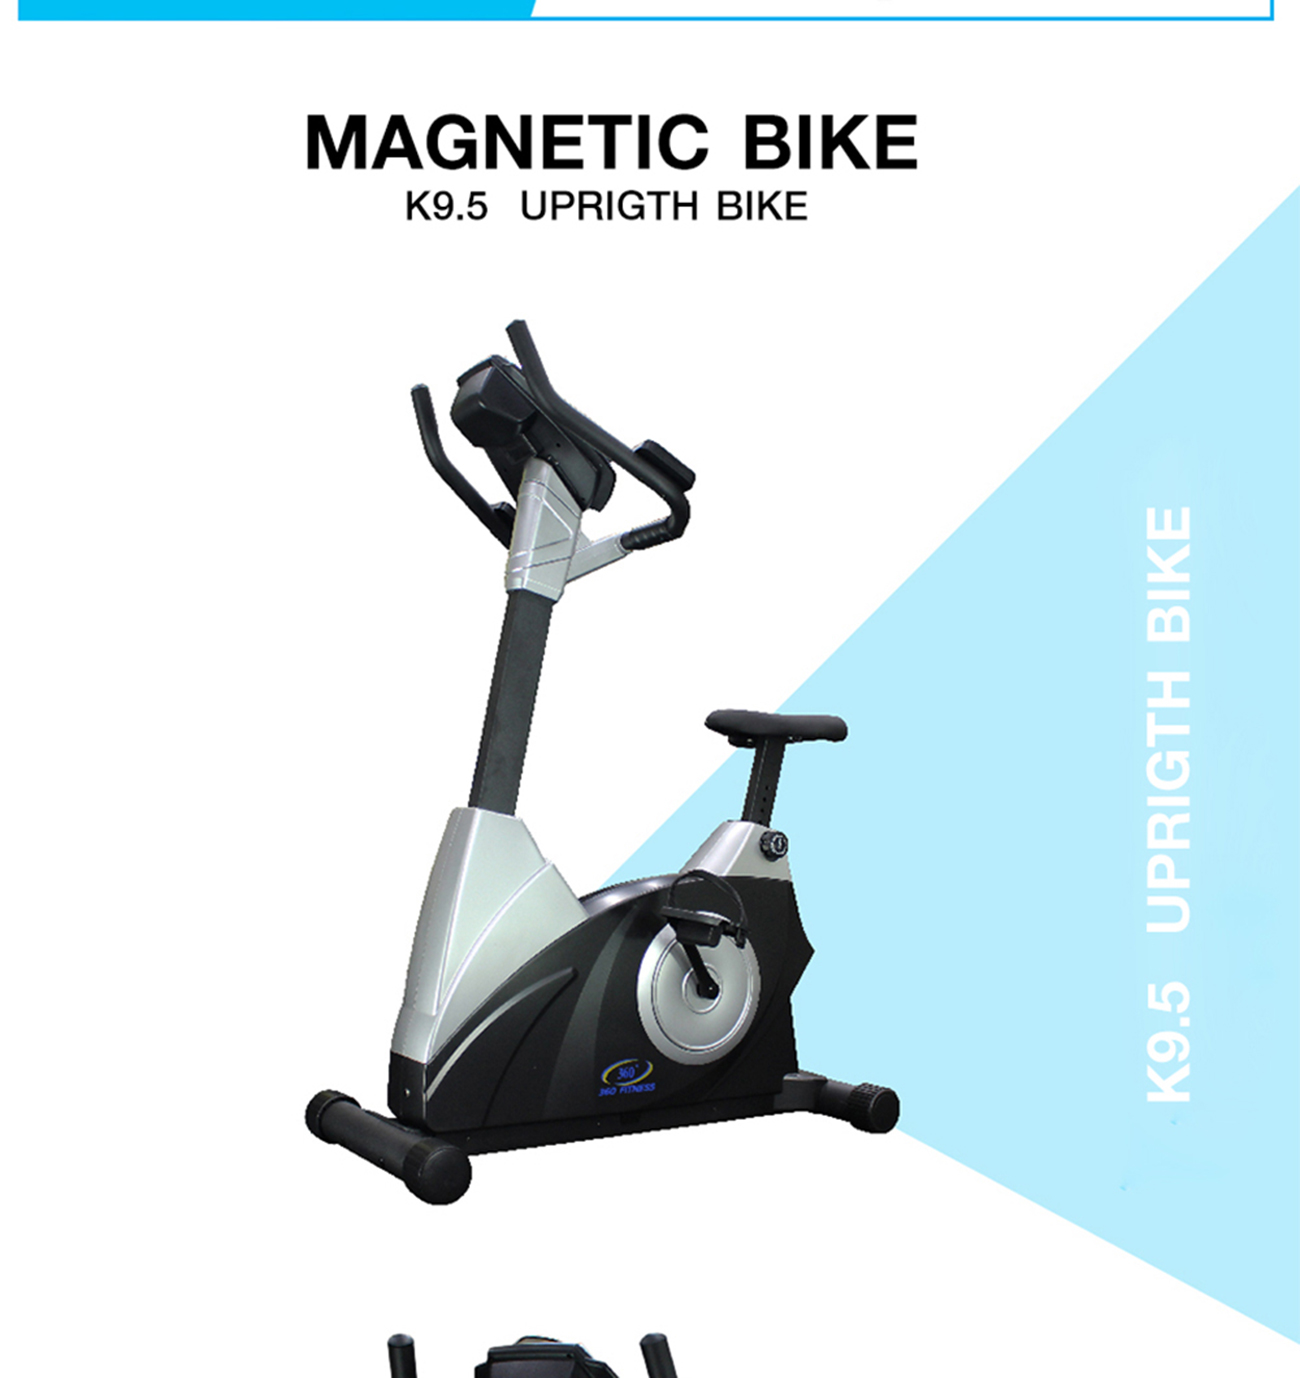 Magnetic Bike UPRIGTH BIKE K9.5